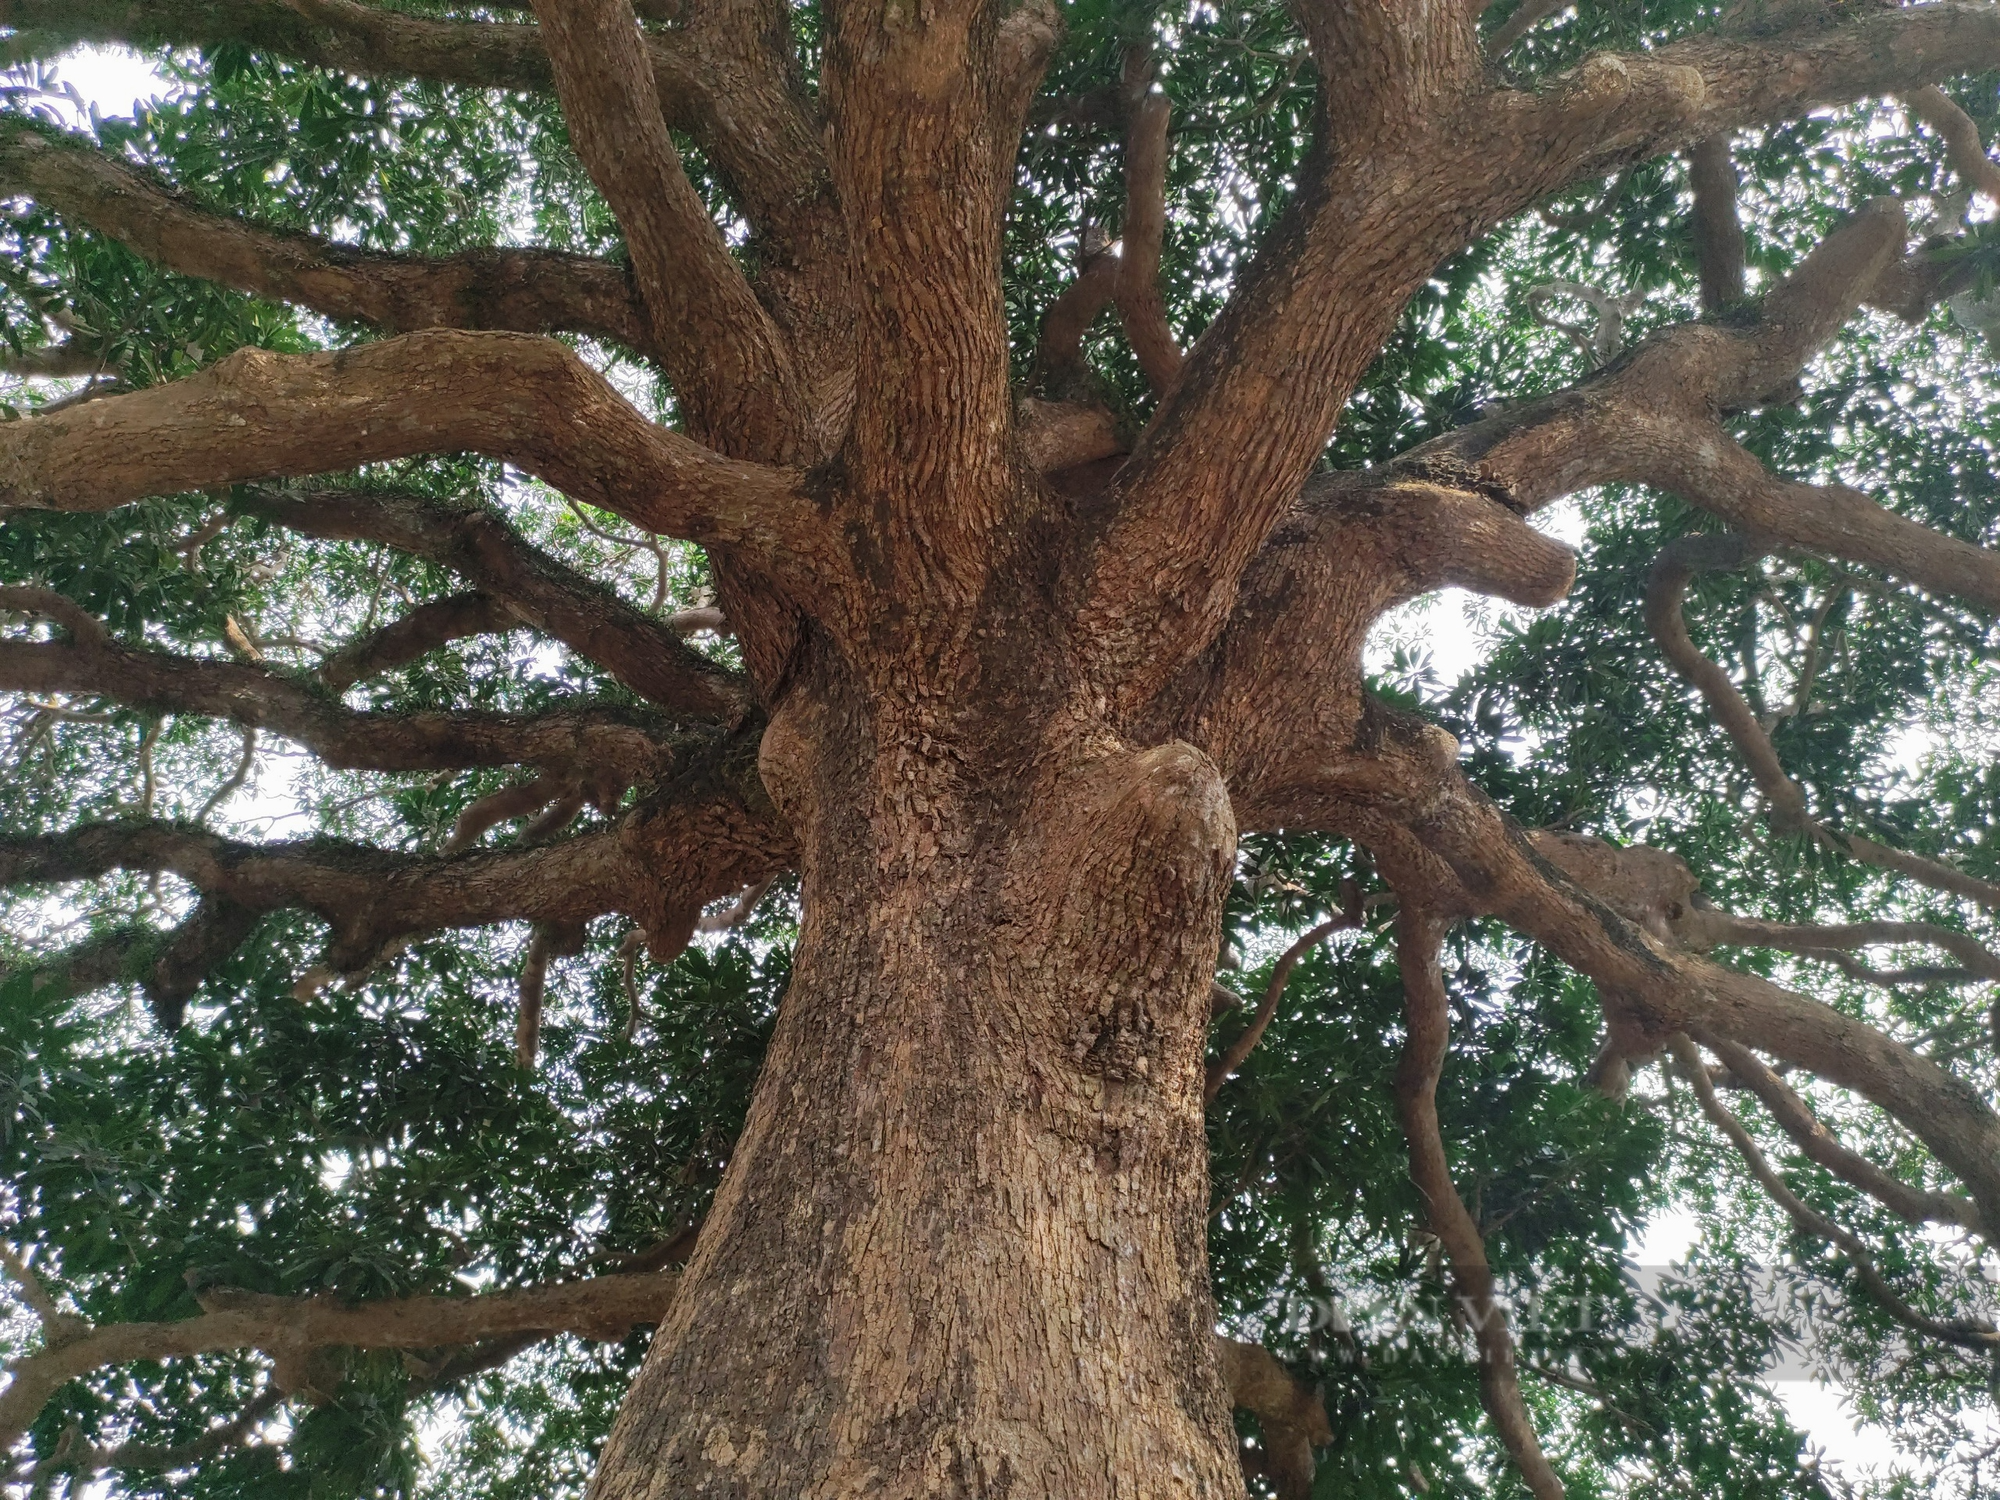 Cây trôi cổ thụ gần 800 năm tuổi sai trĩu quả ở Quốc Oai (Hà Nội) - Ảnh 3.